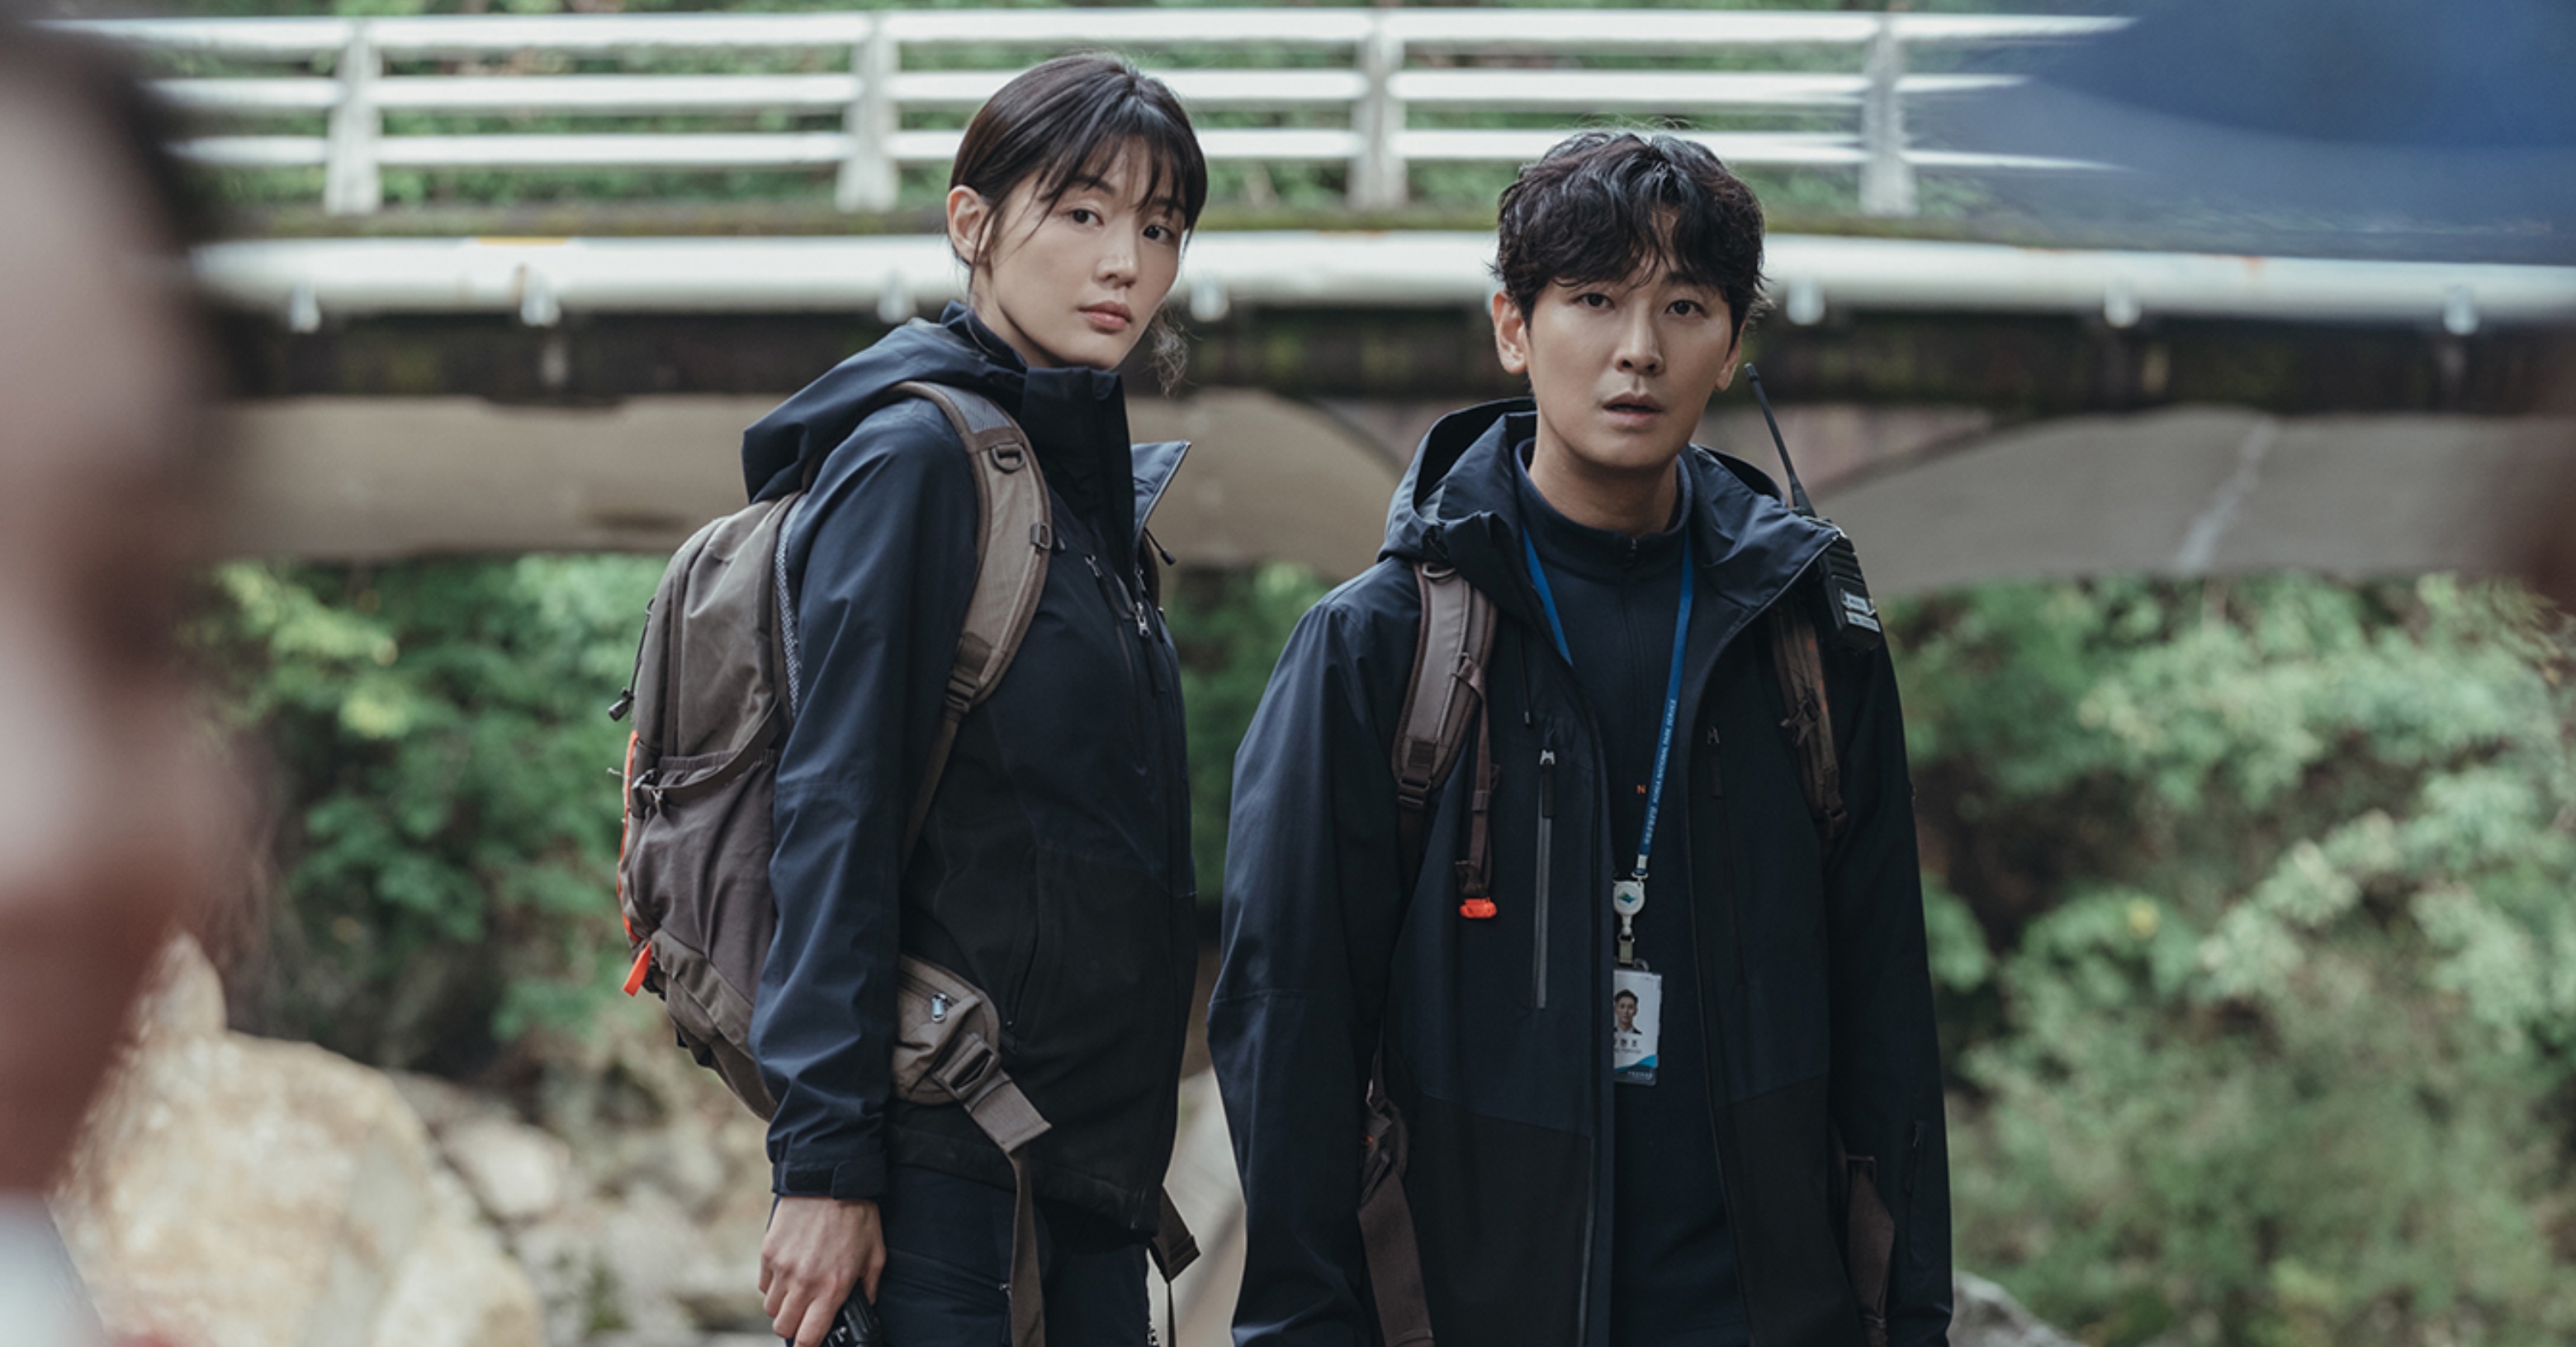 Actors Jun Ji-hyun and Ju Ji-hoon for 'Jirisan' K-drama wearing mountain gear and clothing.